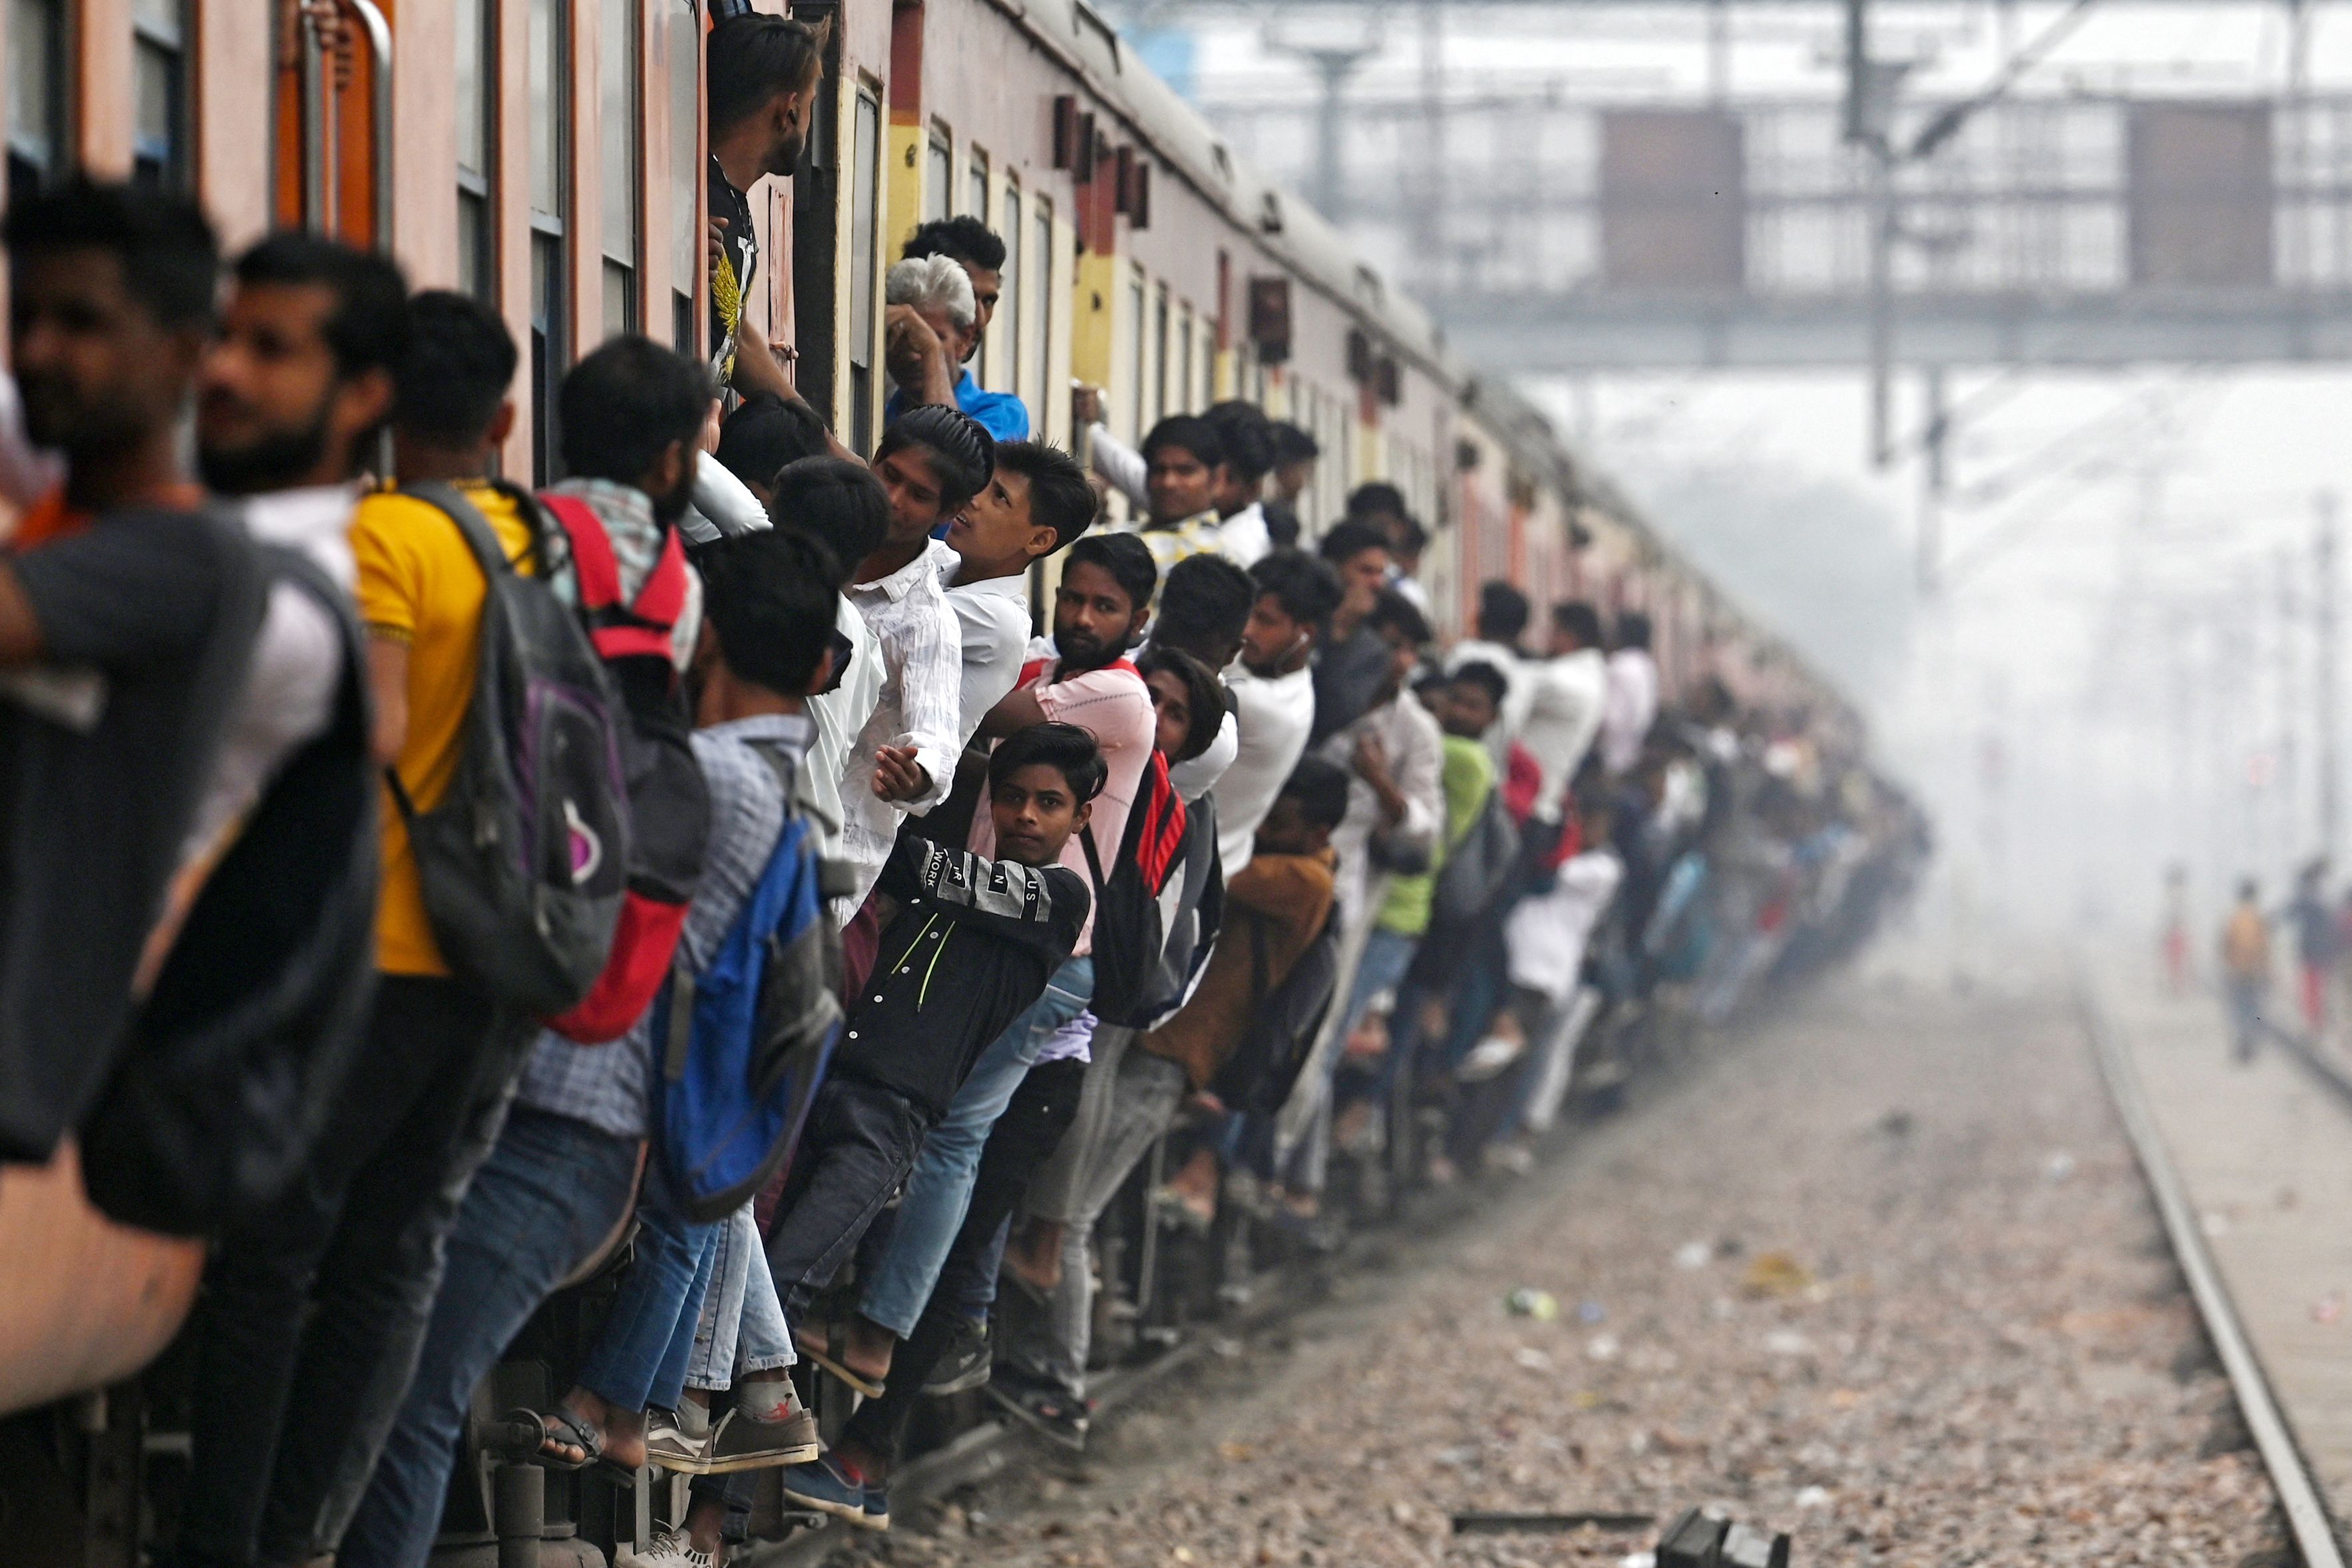 인도 우타르 프라데시 주의 기차역 출근길. 사람들이 만원 열차에 매달려 있다. (AFP)